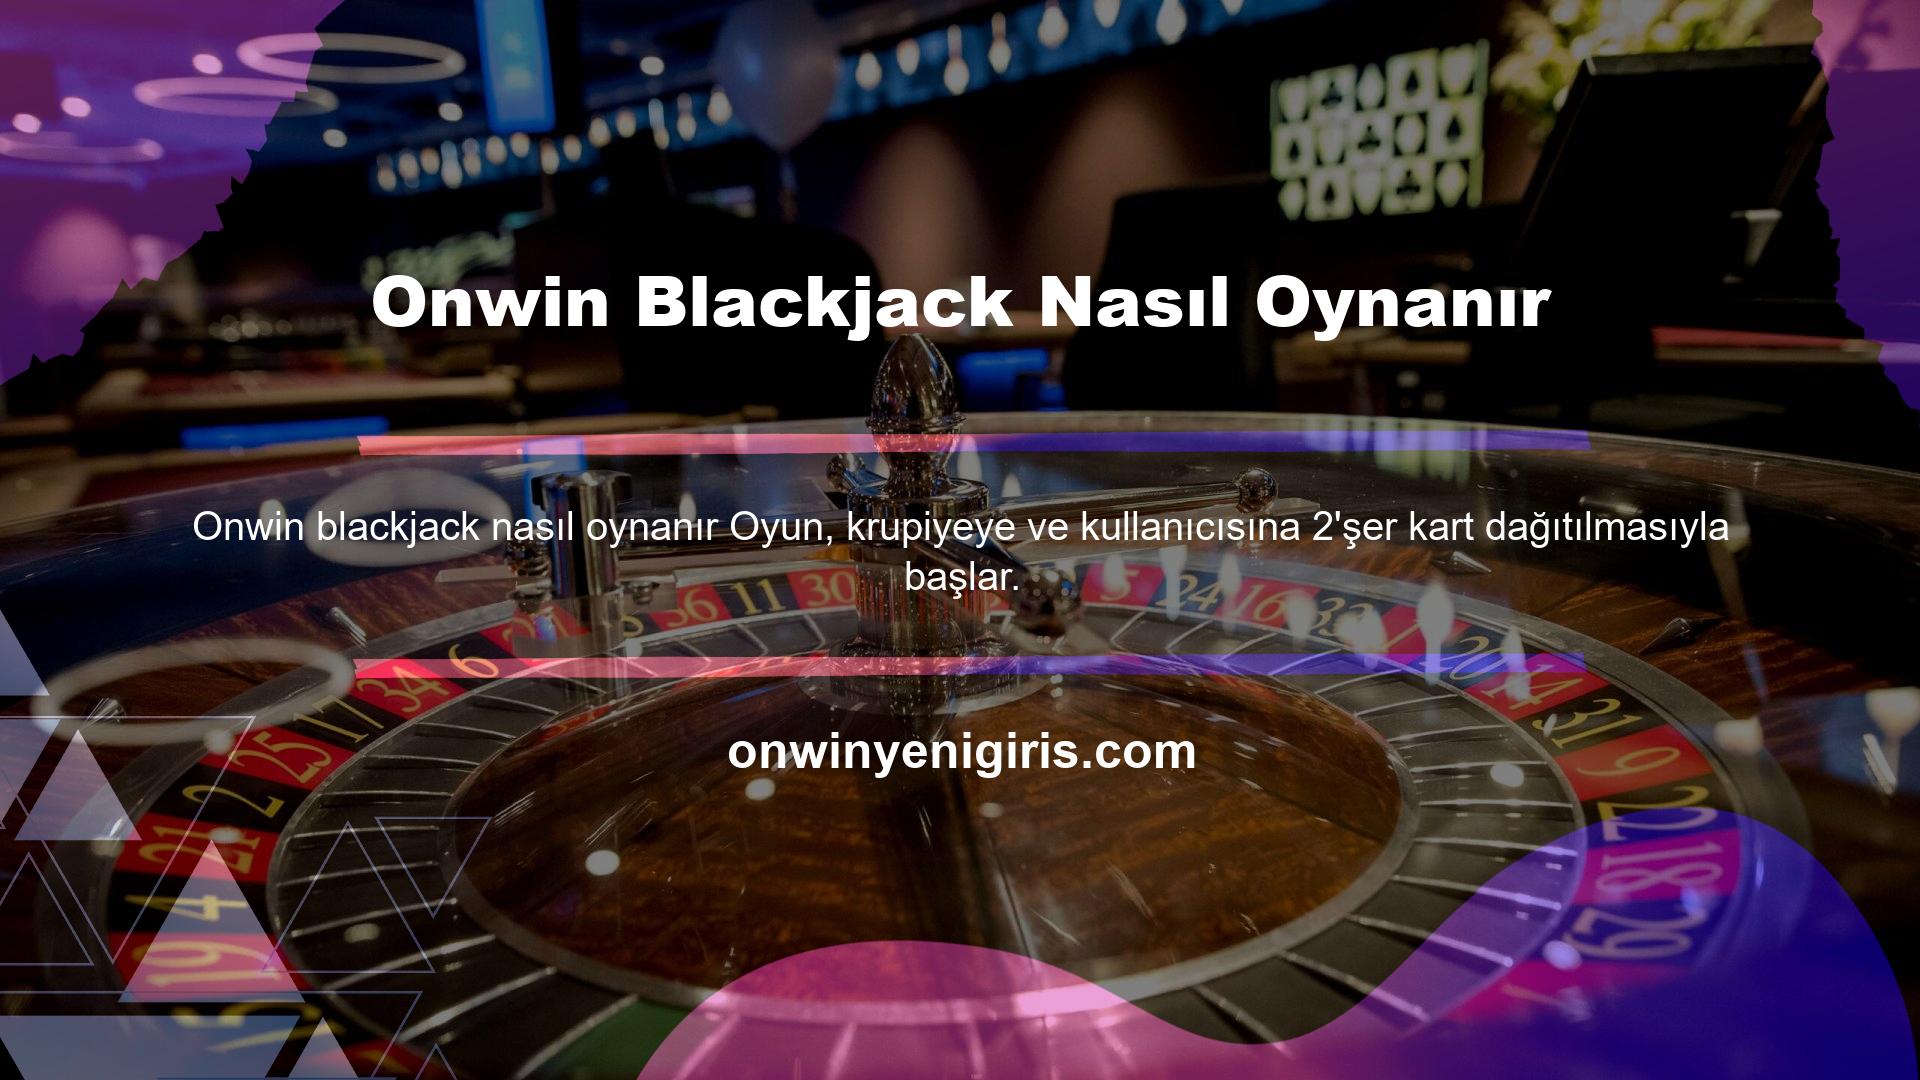 Onwin Blackjack Nasıl Oynanır Temel amaç, elindeki toplam kart sayısının mümkün olduğunca az kartla veya puan sayısına yakın olarak 21'e ulaşmasını sağlamaktır